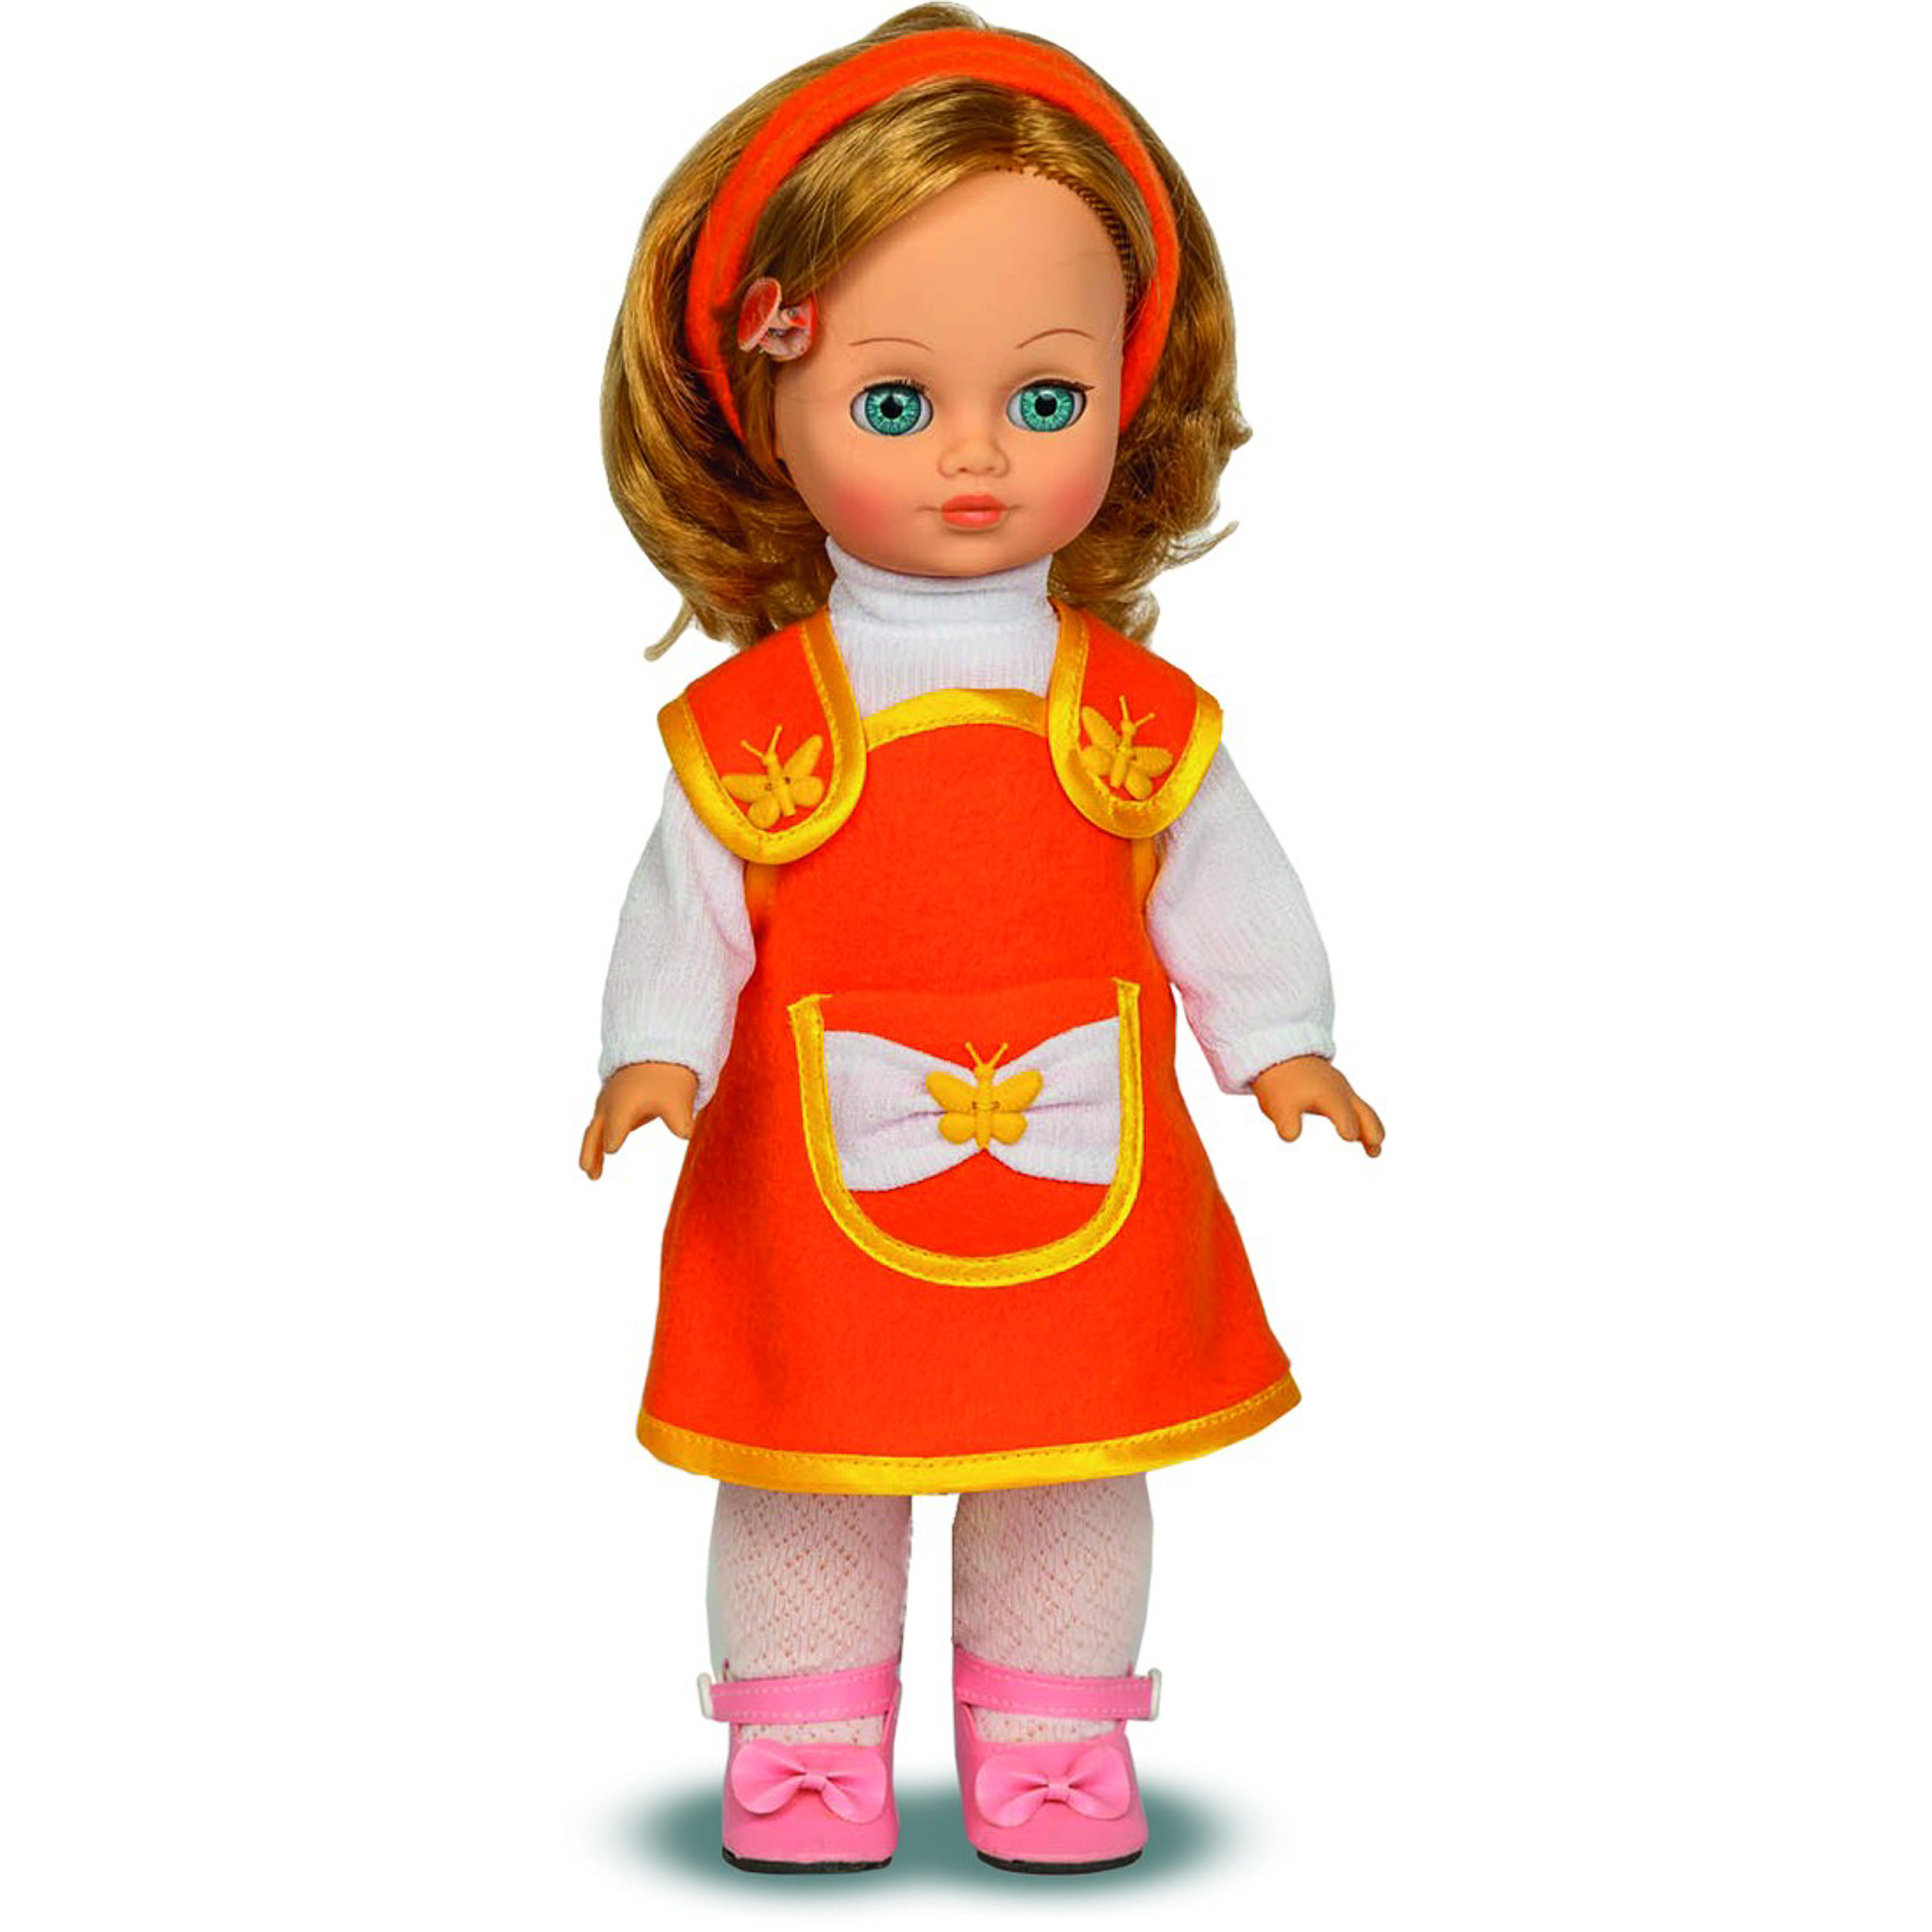 Куклы со звуком. Куклы для детей. Куклы в детском саду. Кукла в оранжевом платье.